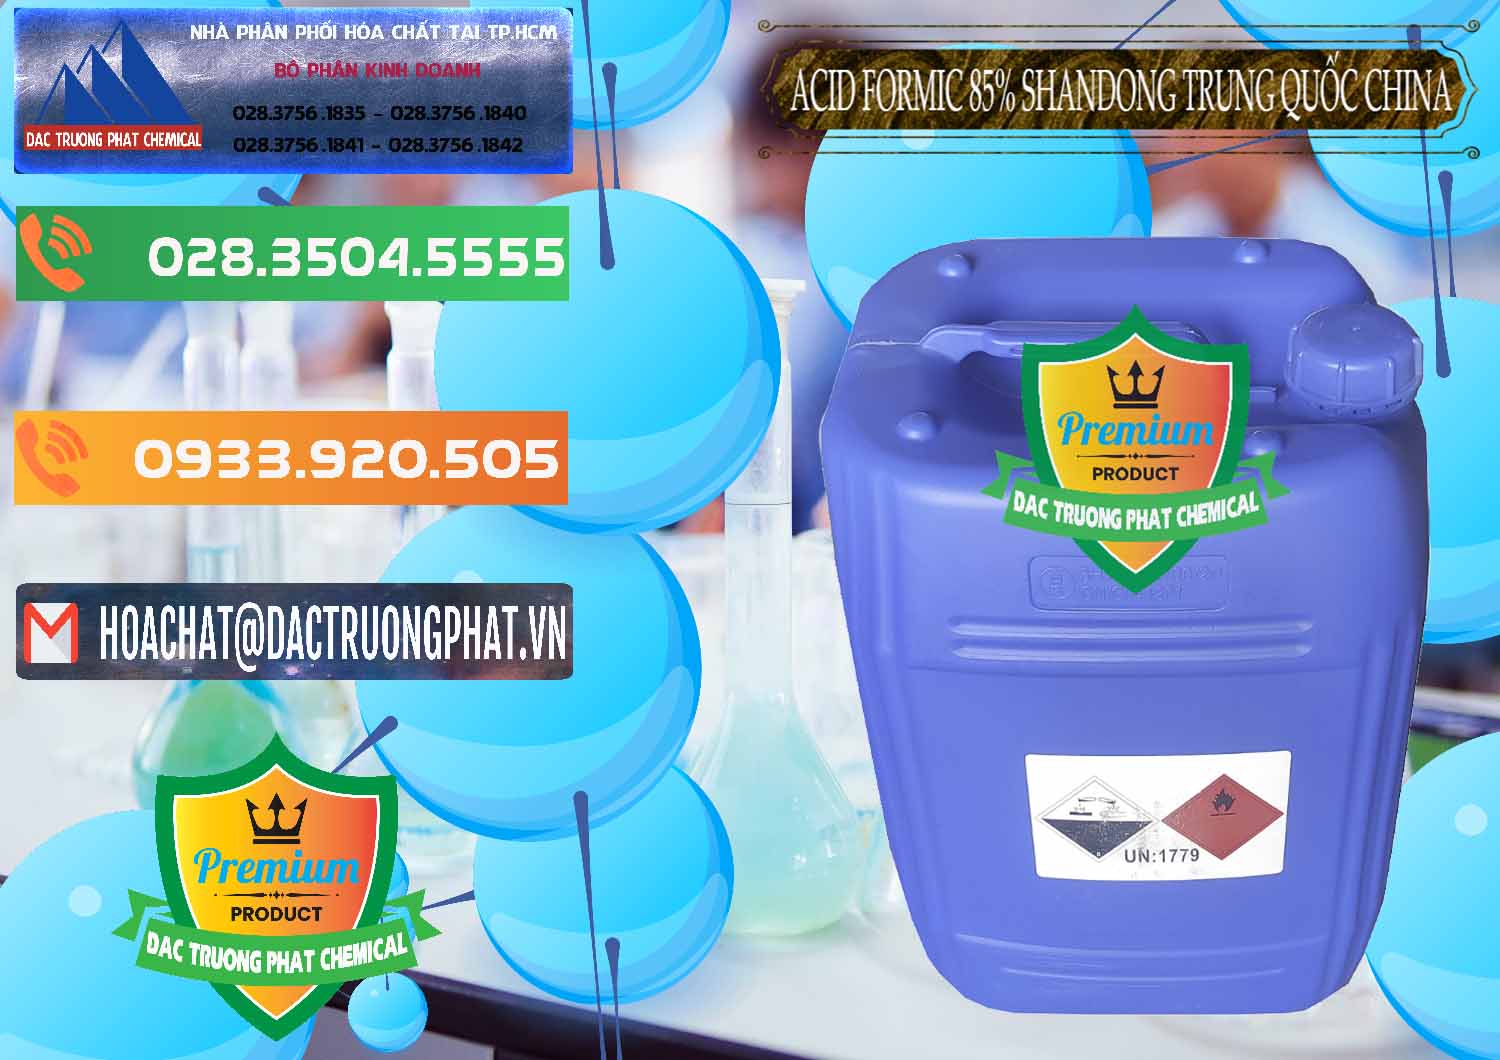 Công ty phân phối _ bán Acid Formic - Axit Formic 85% Shandong Trung Quốc China - 0235 - Công ty cung cấp & phân phối hóa chất tại TP.HCM - hoachatxulynuoc.com.vn